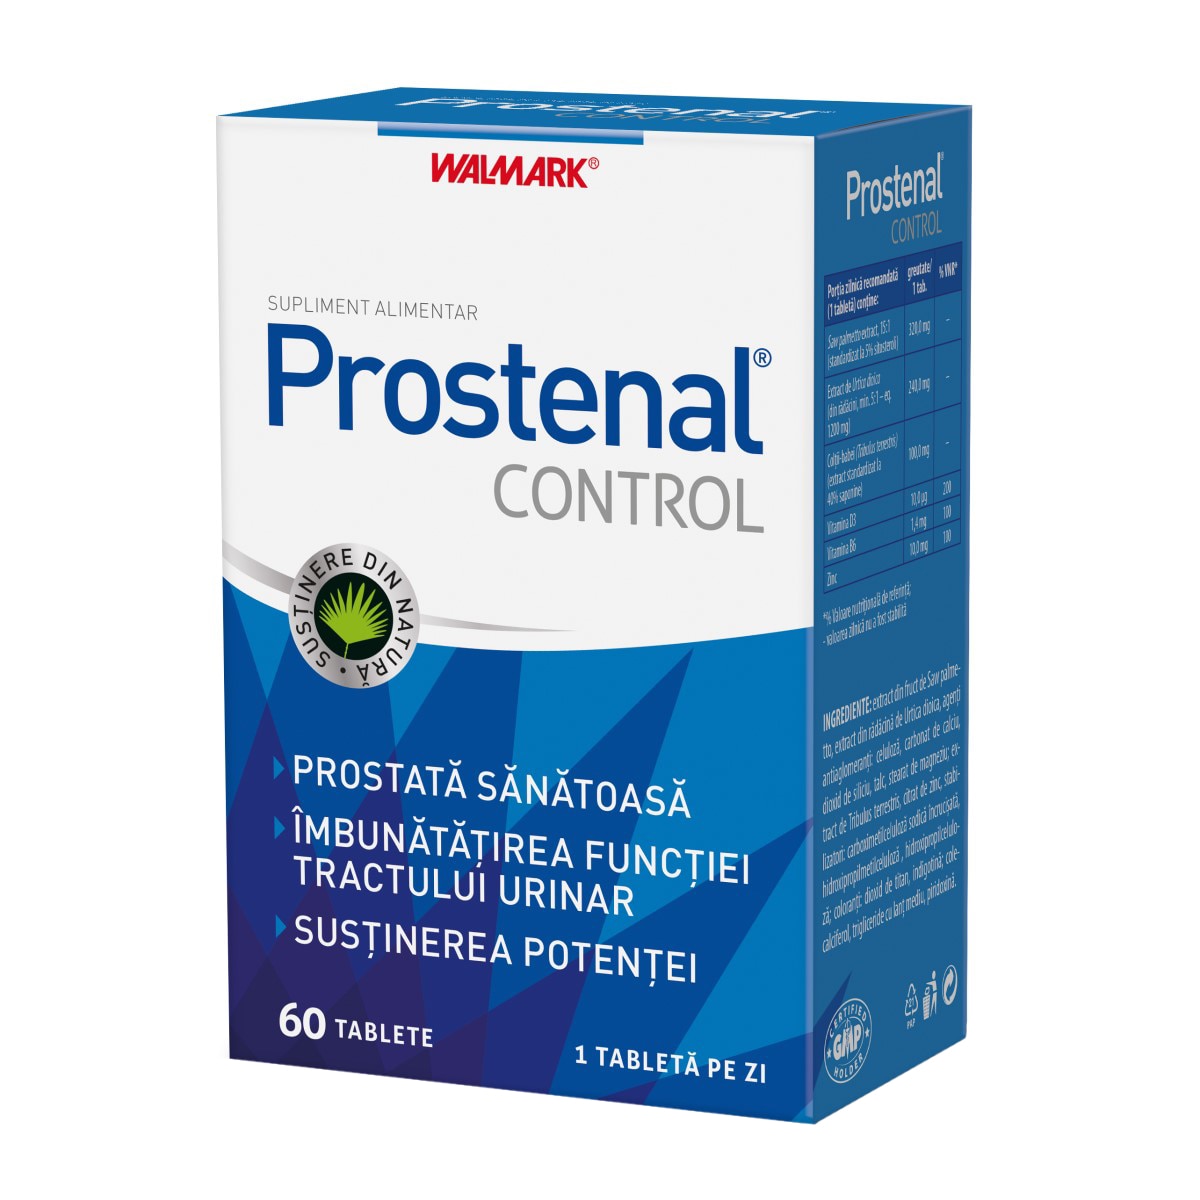 Cel mai bun tratament pentru prostata mărită, prostatită